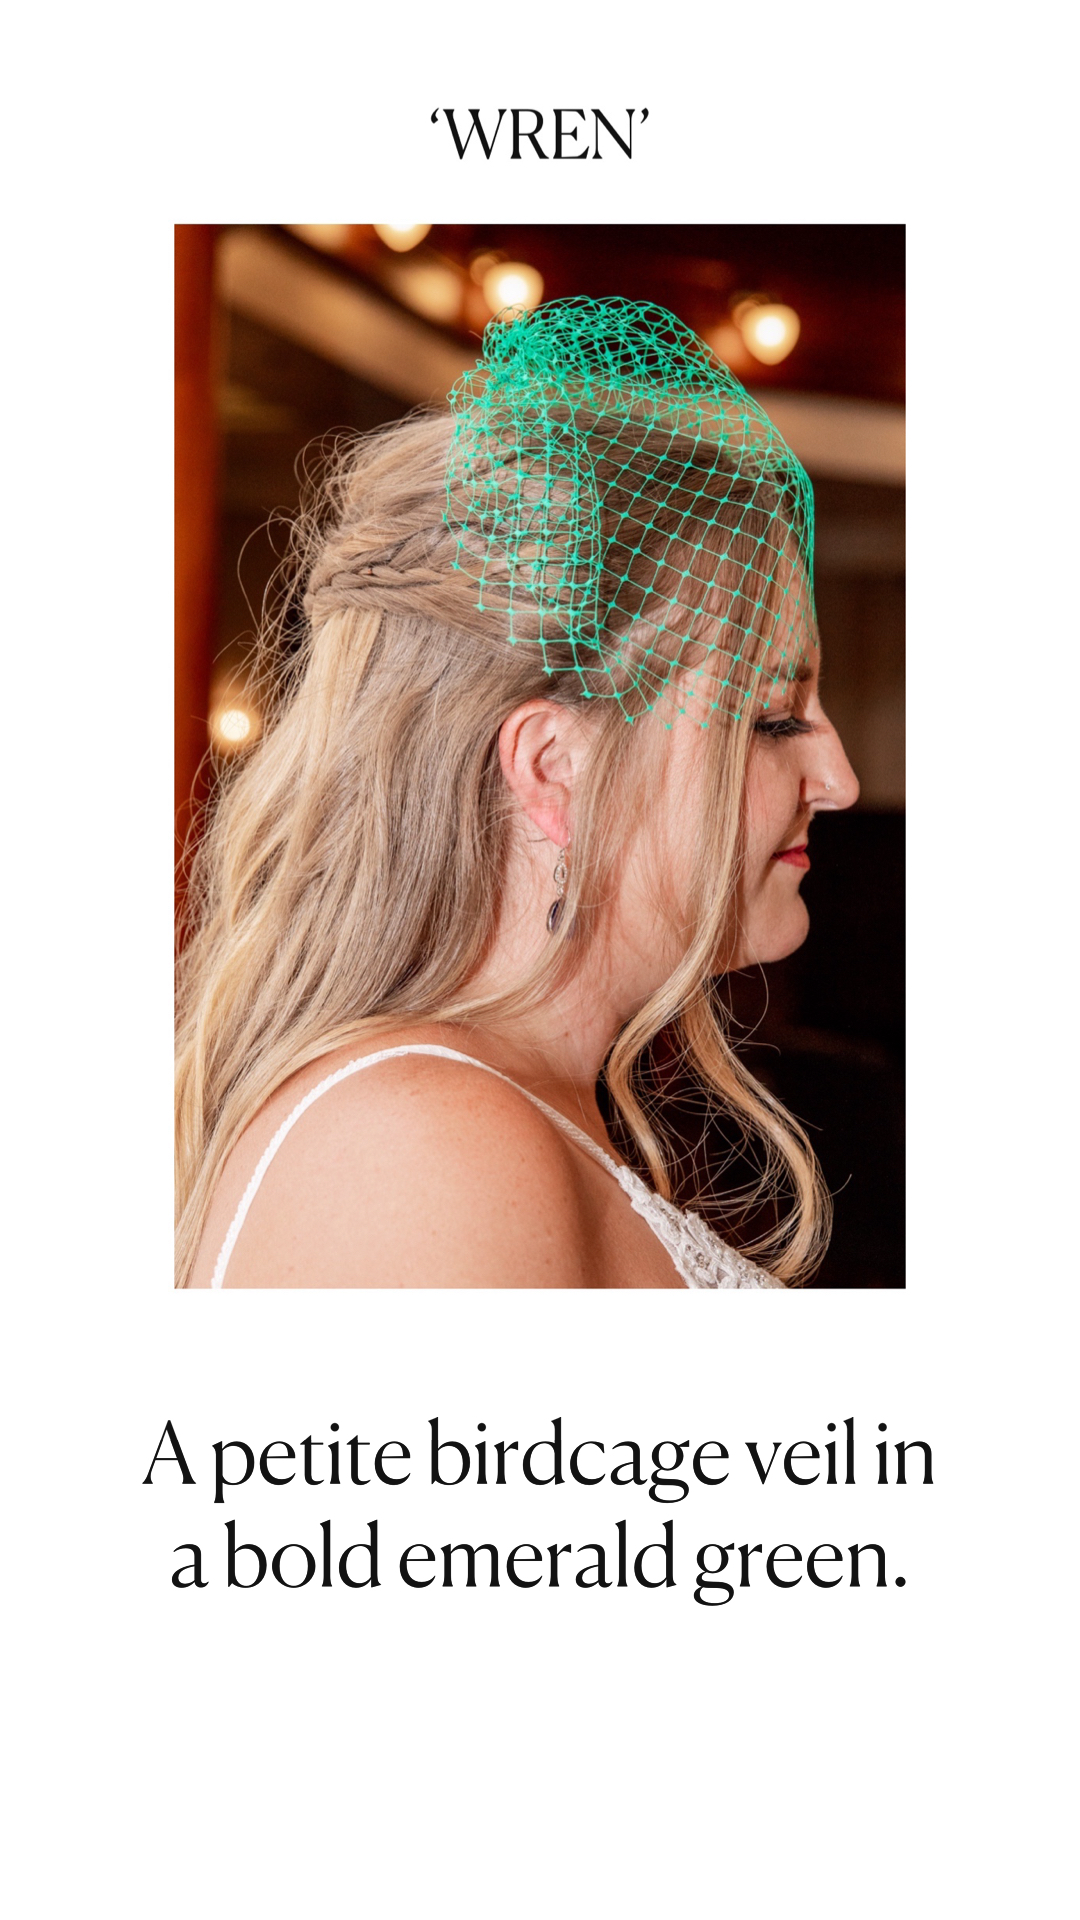 bride wearing an emerald green birdcage veil